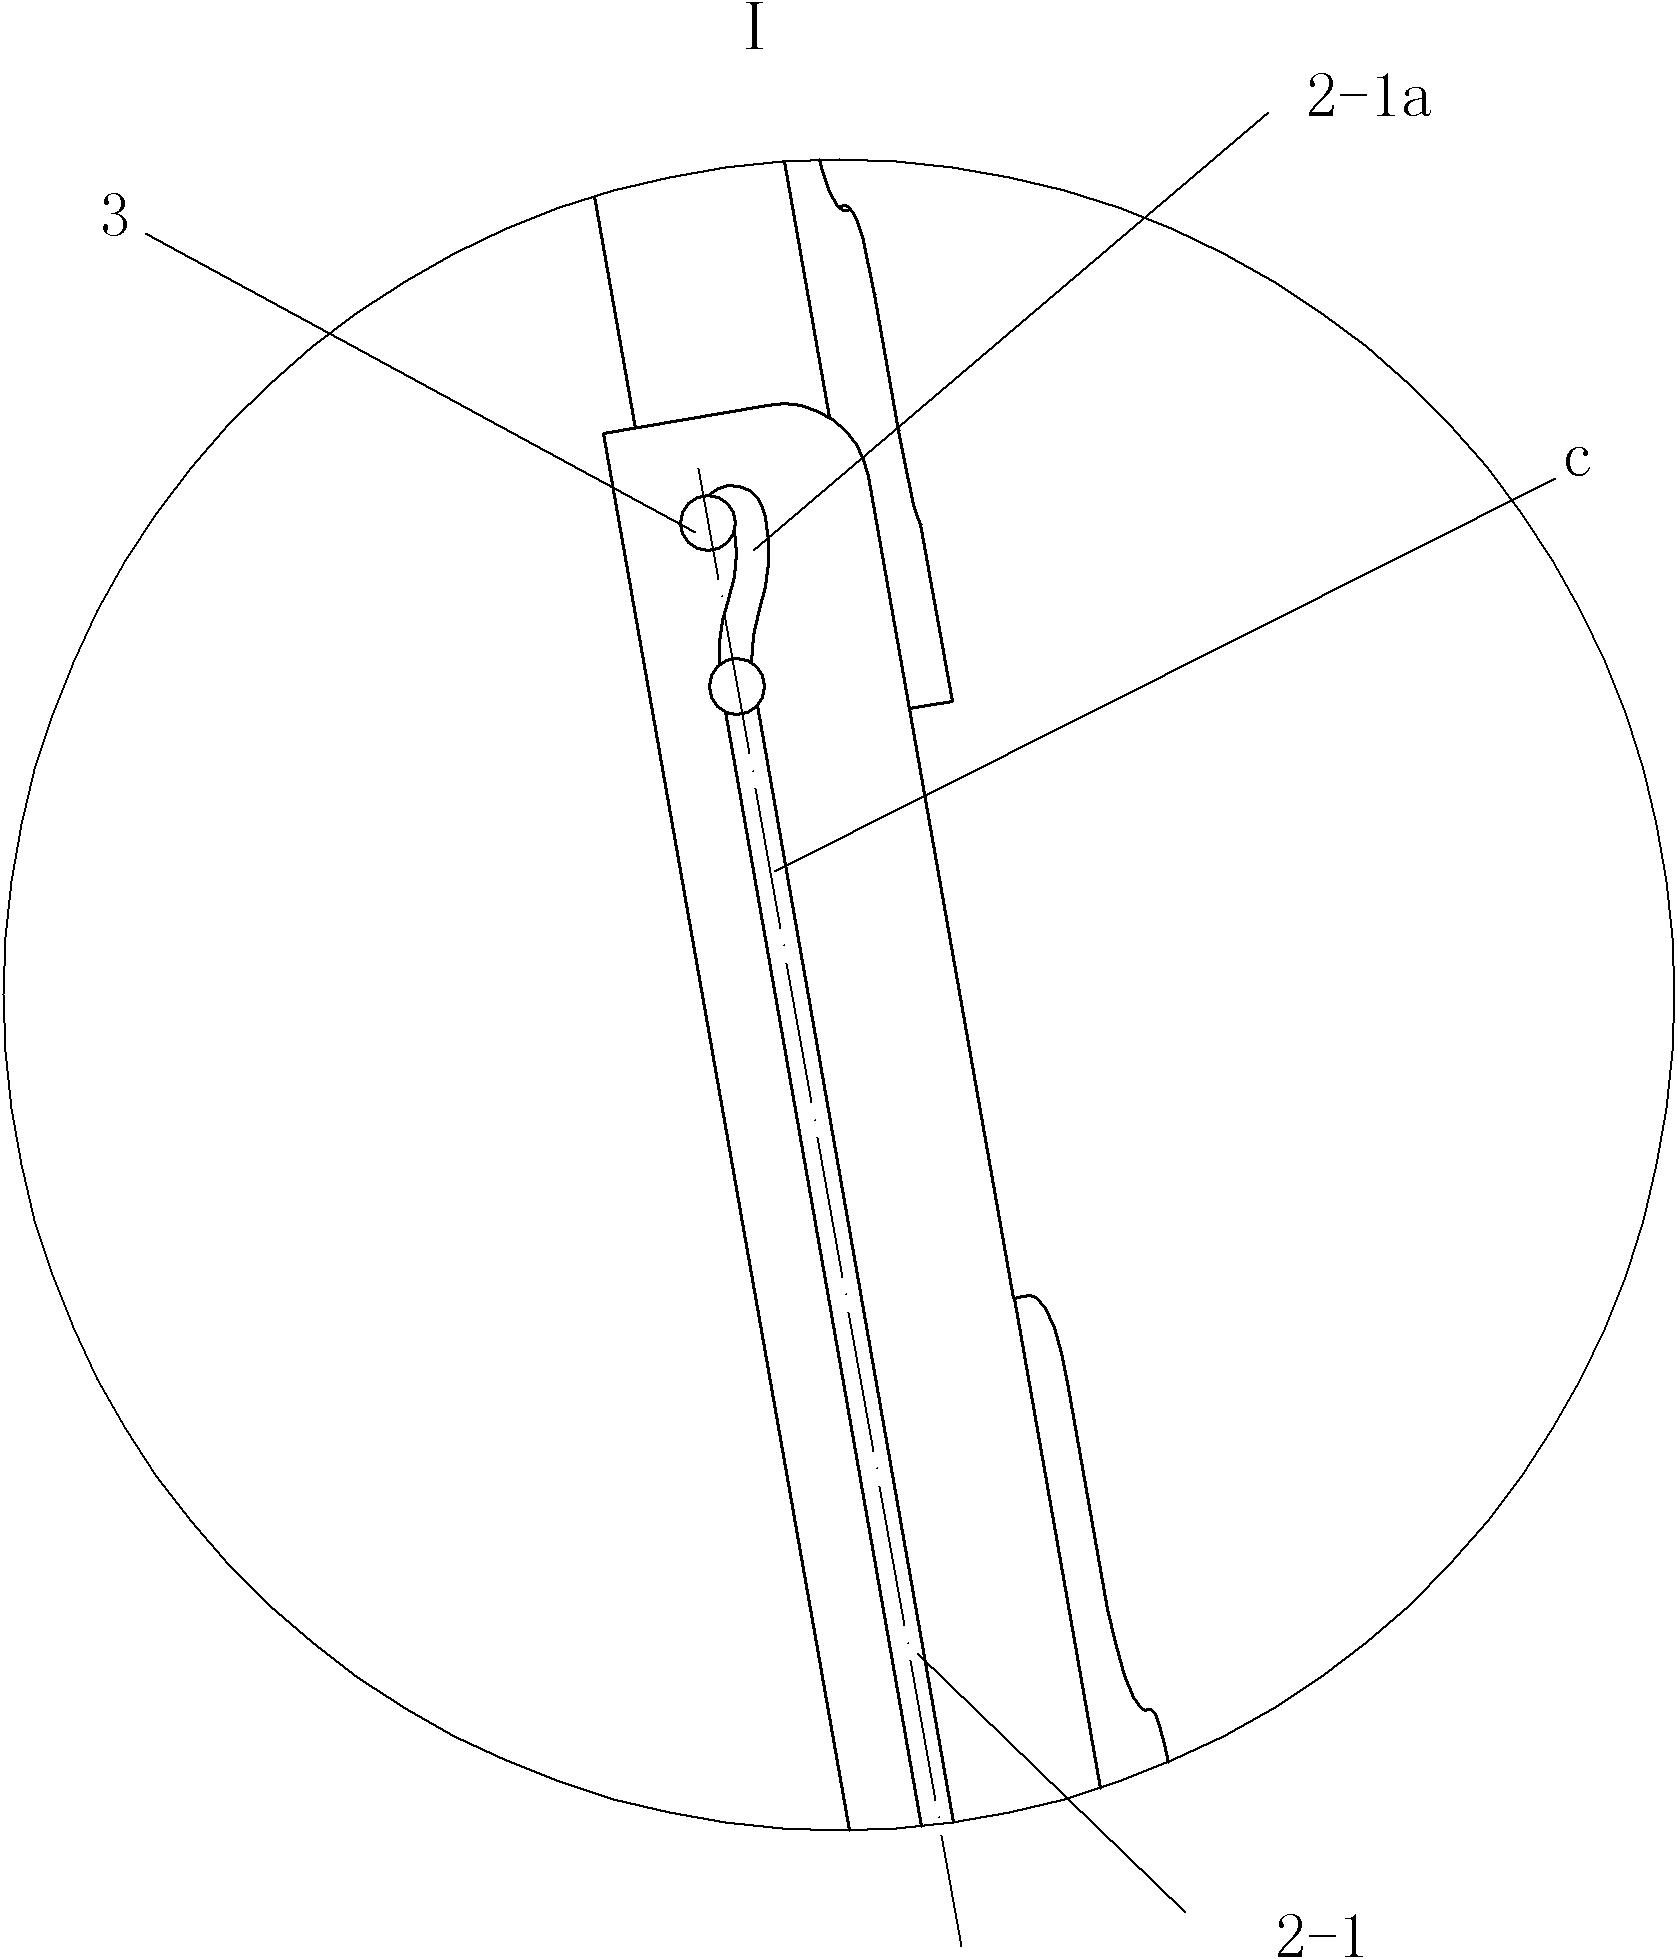 Telescopic data frame